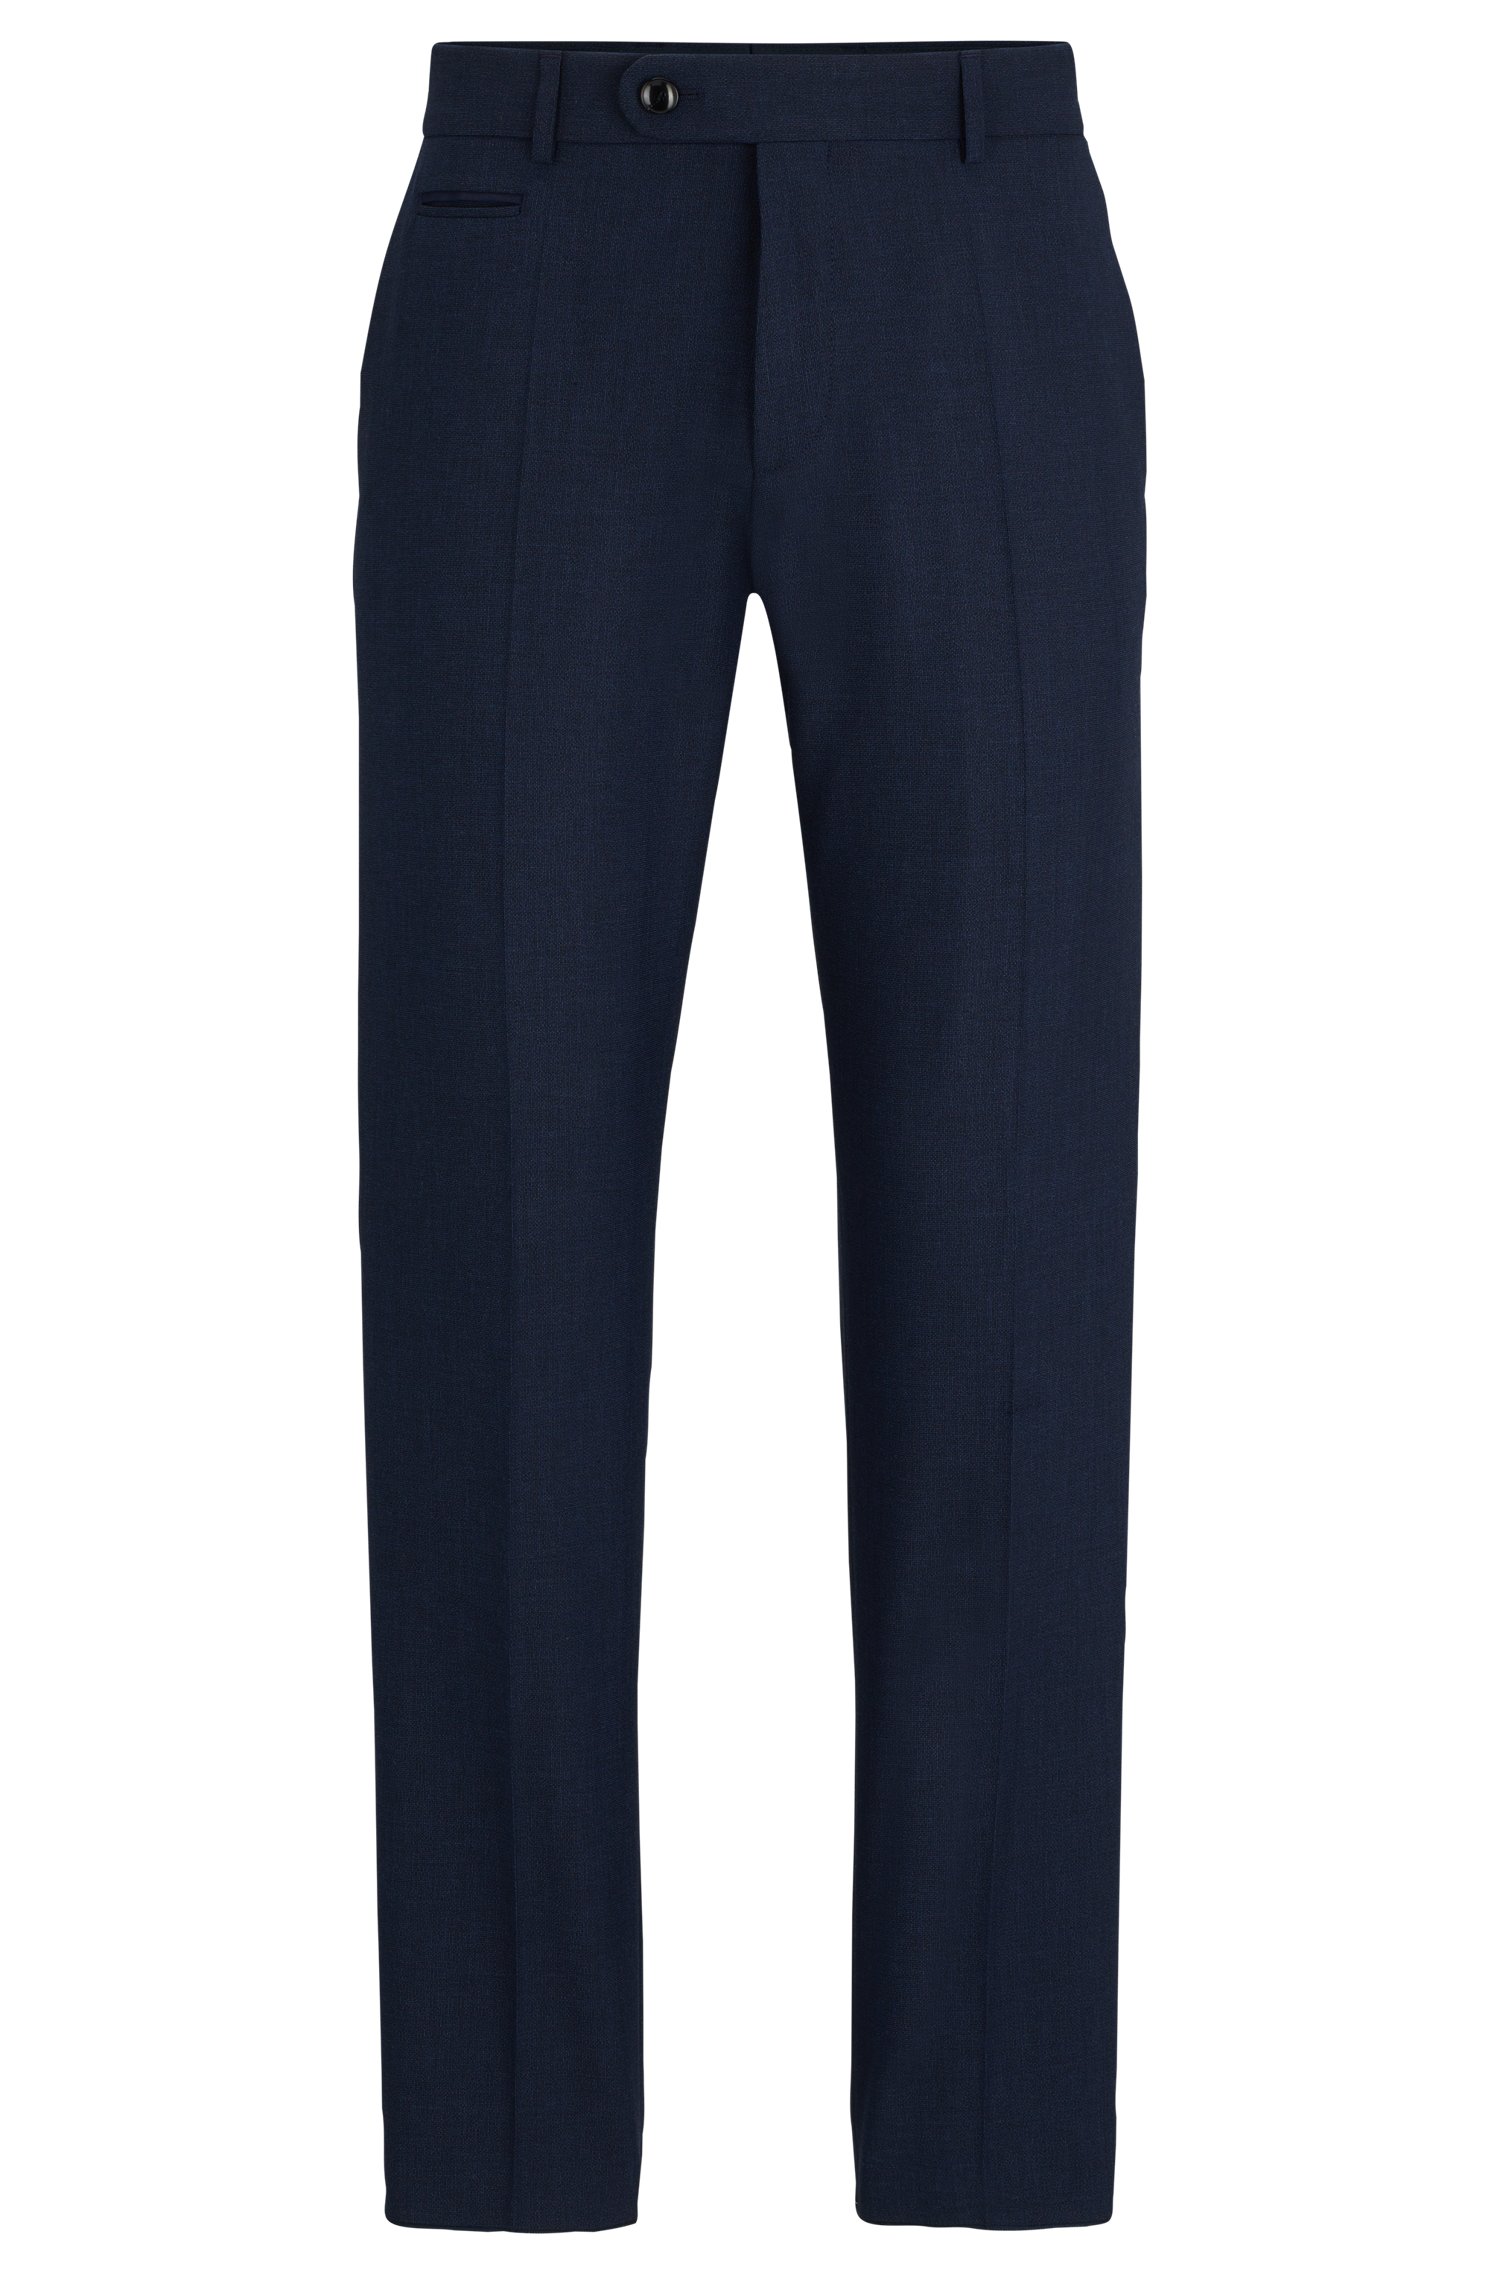 Slim-fit trousers wrinkle-resistant melange fabric